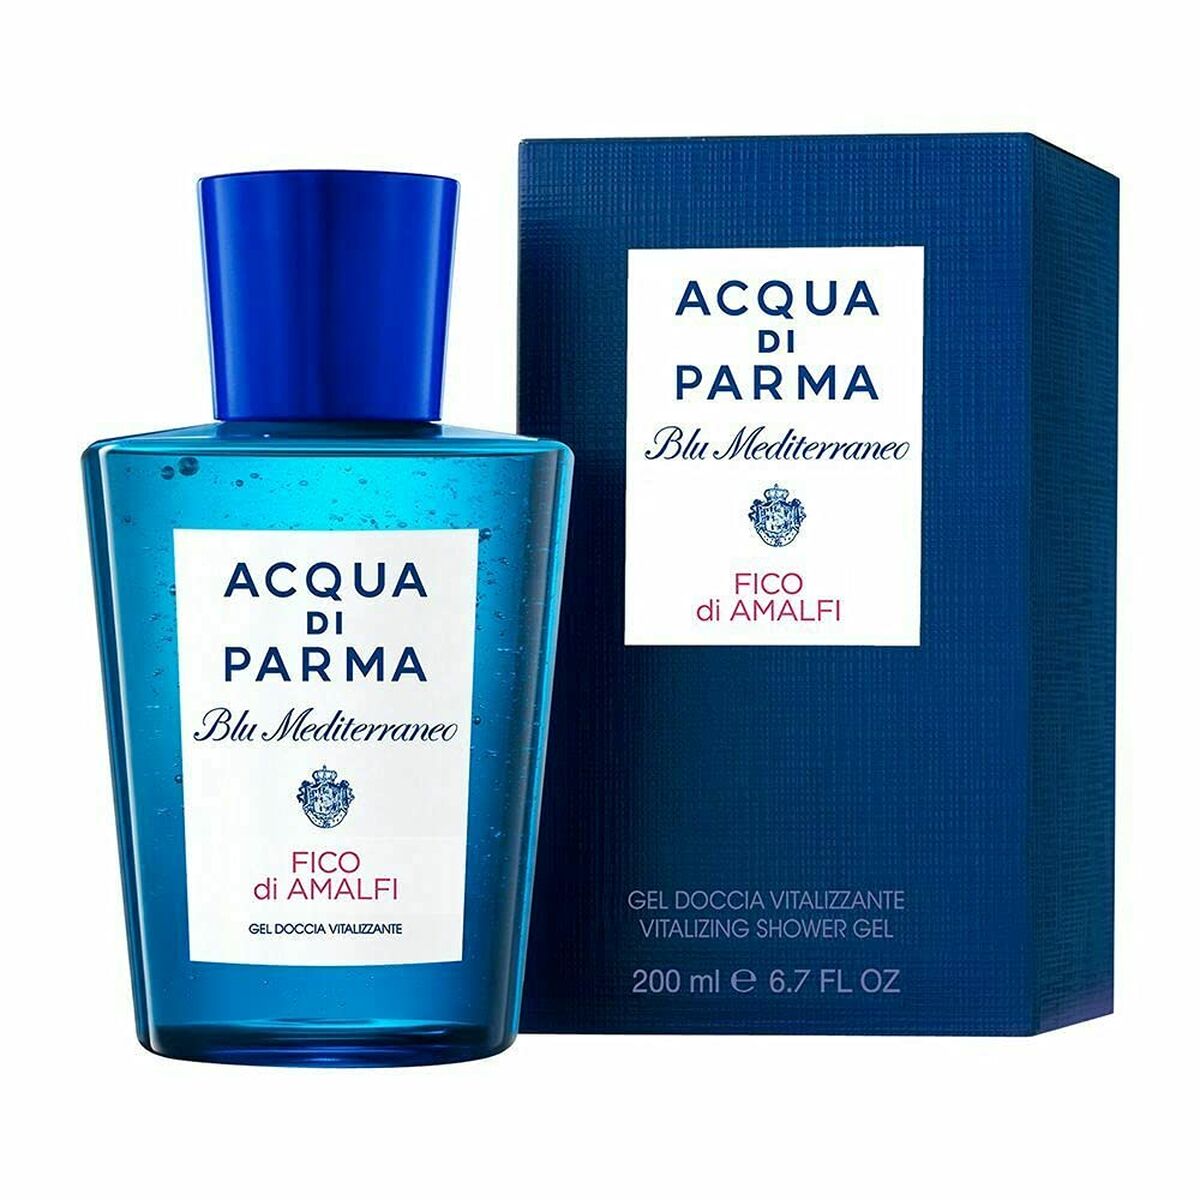 Αρωματικό Αφρόλουτρο Acqua Di Parma Blu Mediterraneo Fico Di Amalfi 200 ml